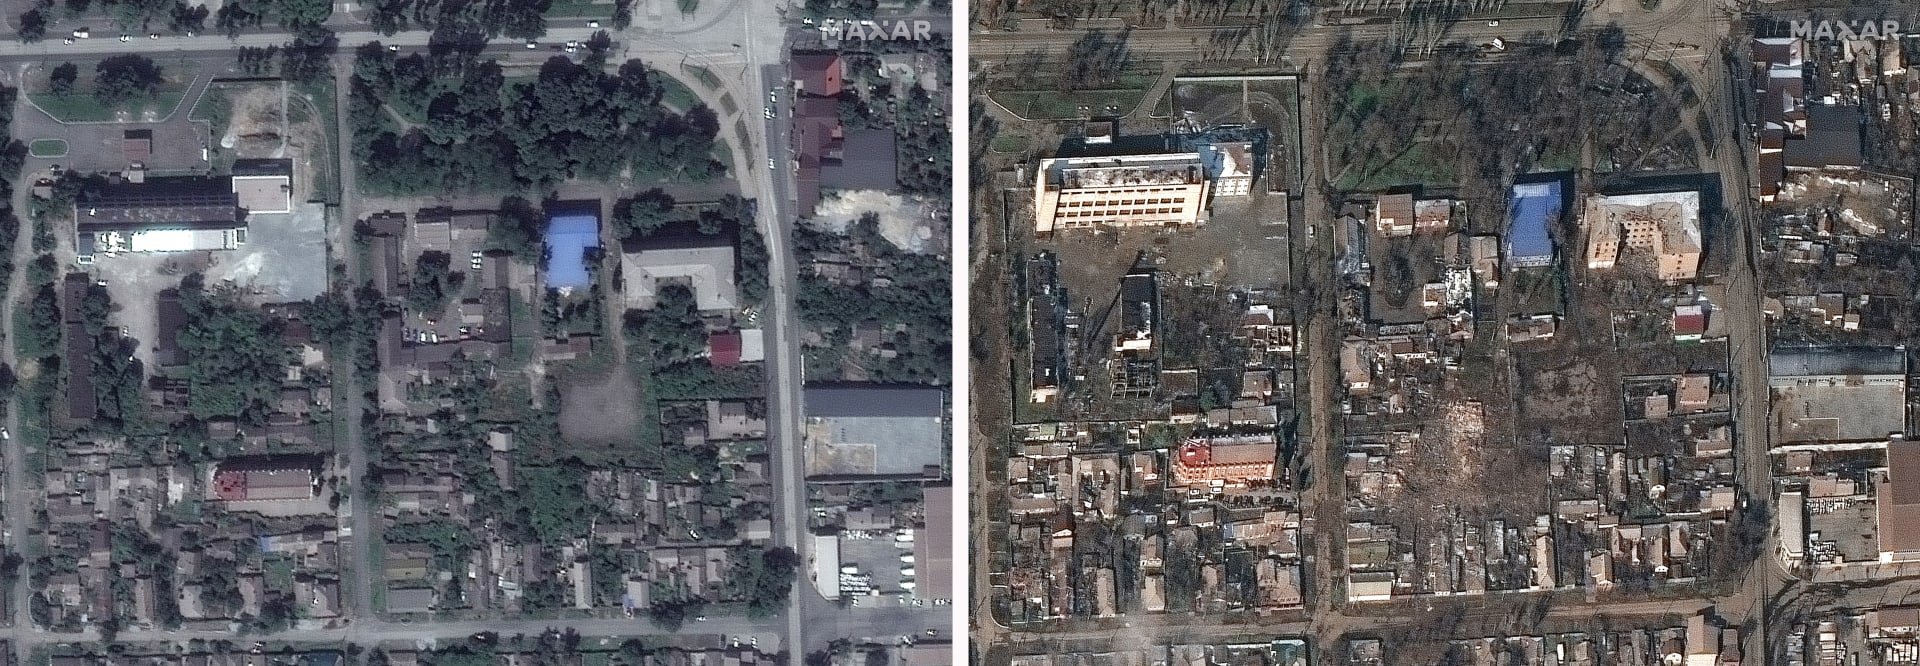 Zničené budovy a domy v Mariupolu na Ukrajině ve středu 9. března 2022 (vpravo) a před bombardováním (vlevo).